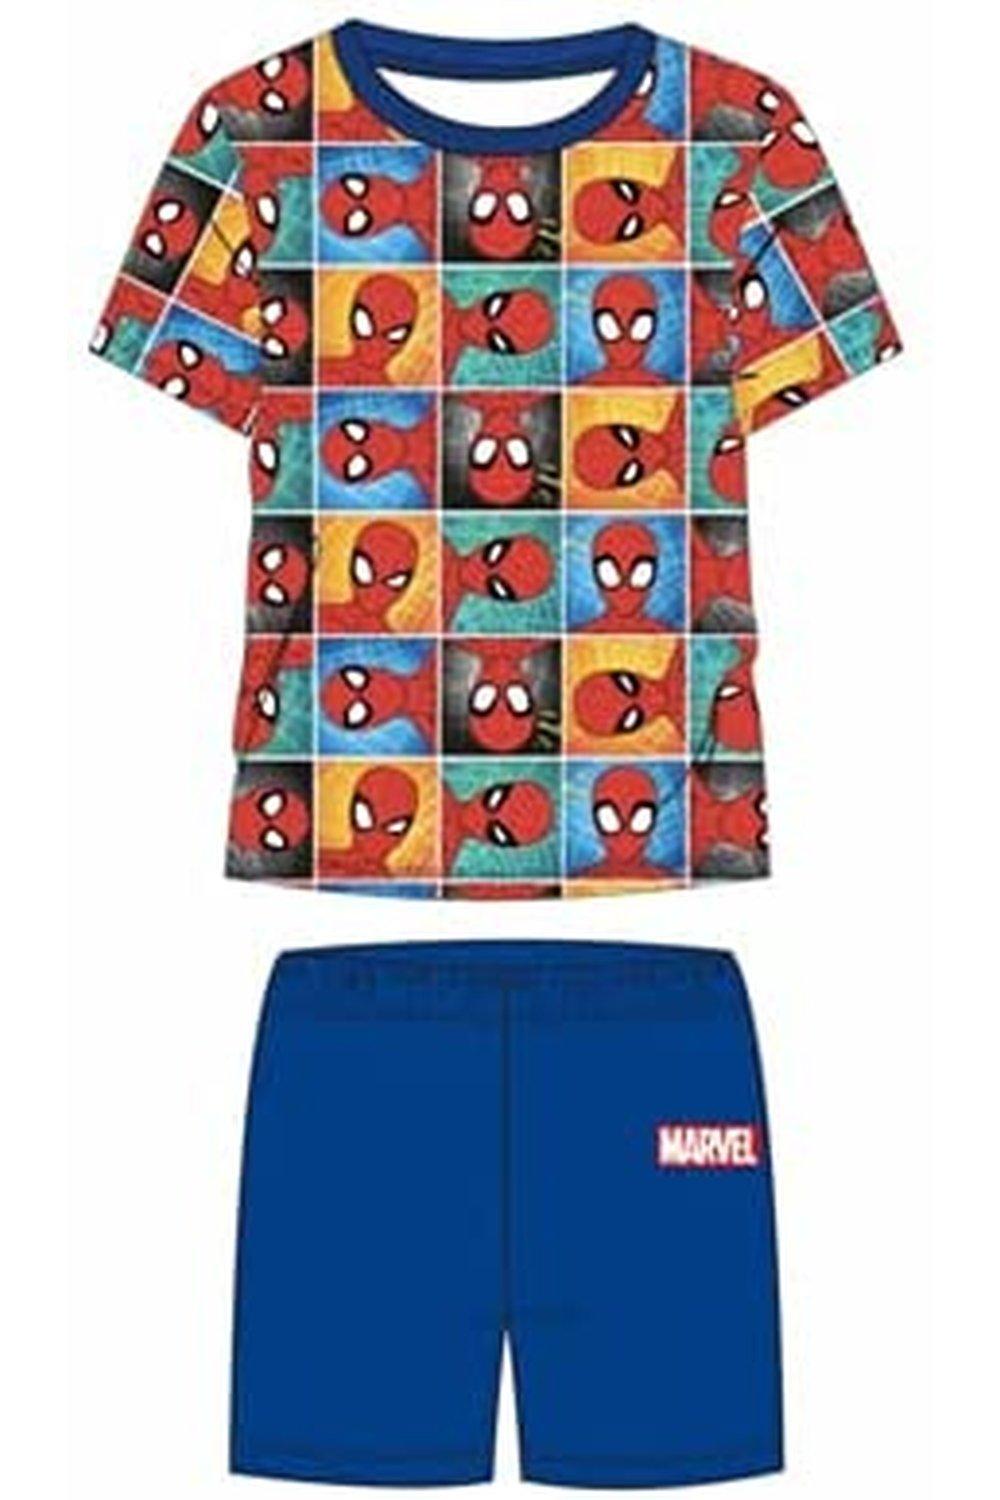 Avengers Spiderman Pyjama Set Short Sleeve